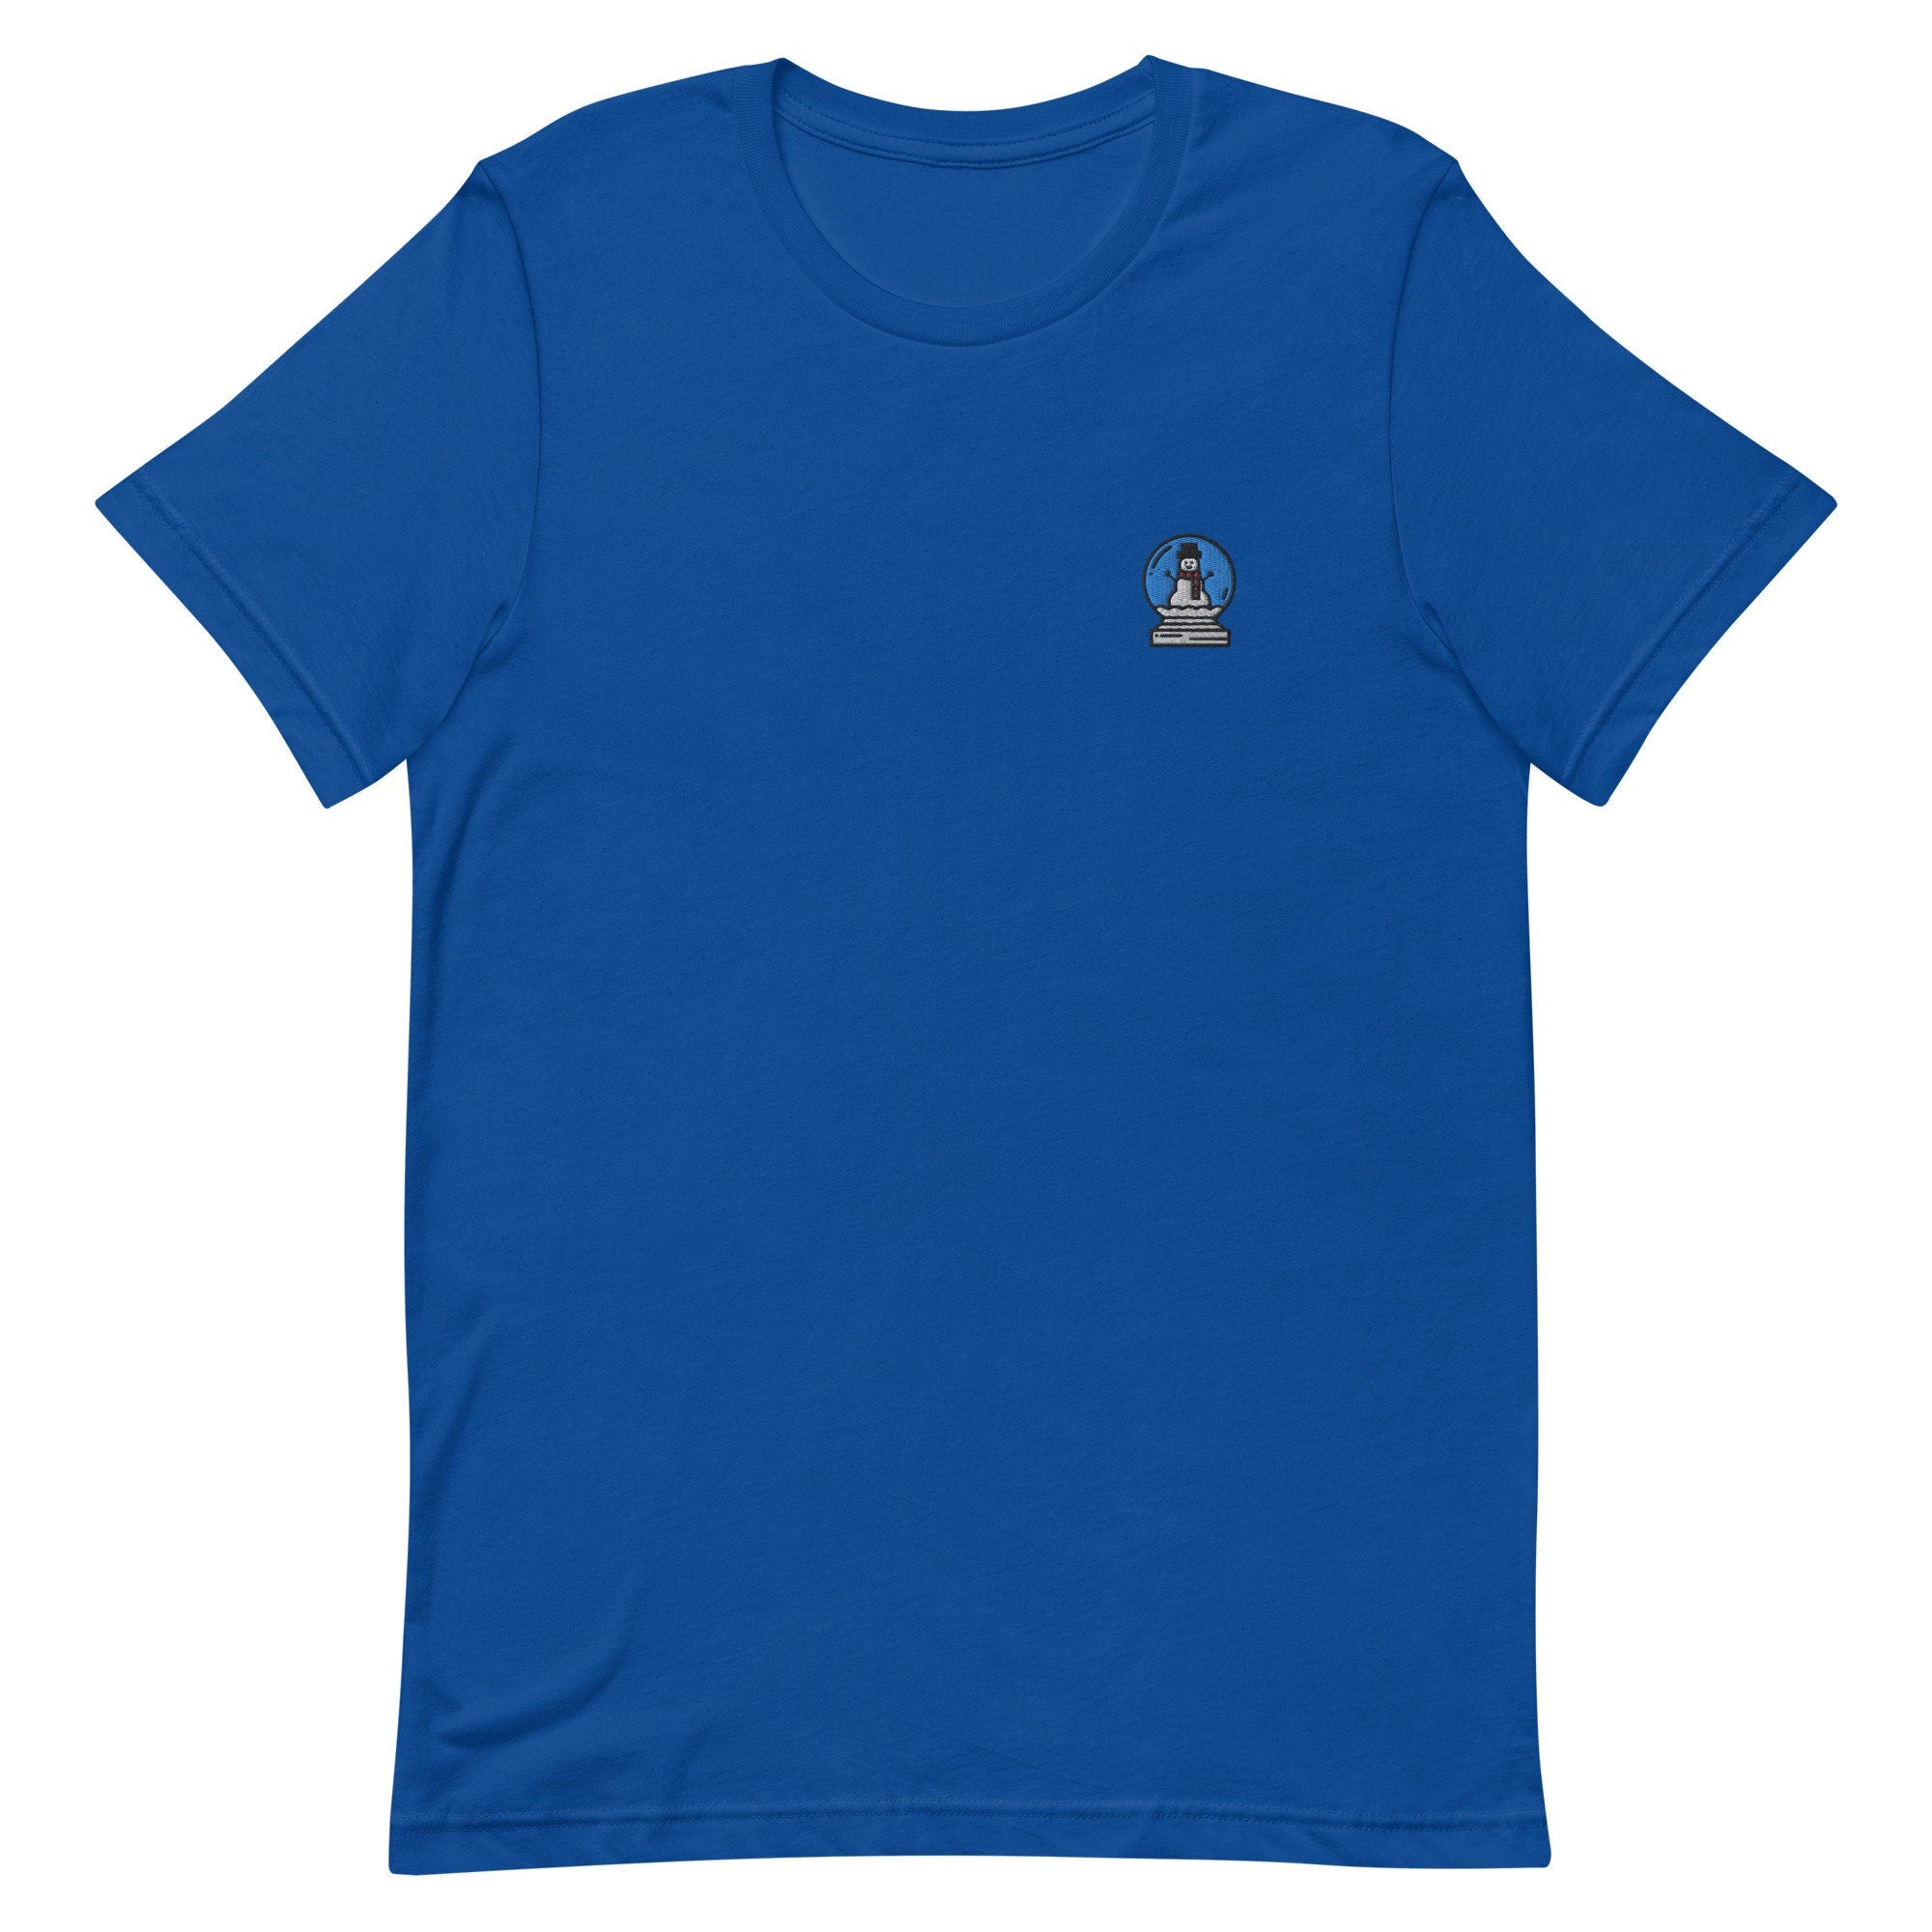 Snow Globe Premium Men's T-Shirt, Embroidered Men's T-Shirt Gift for Boyfriend, Men's Short Sleeve Shirt - Multiple Colors